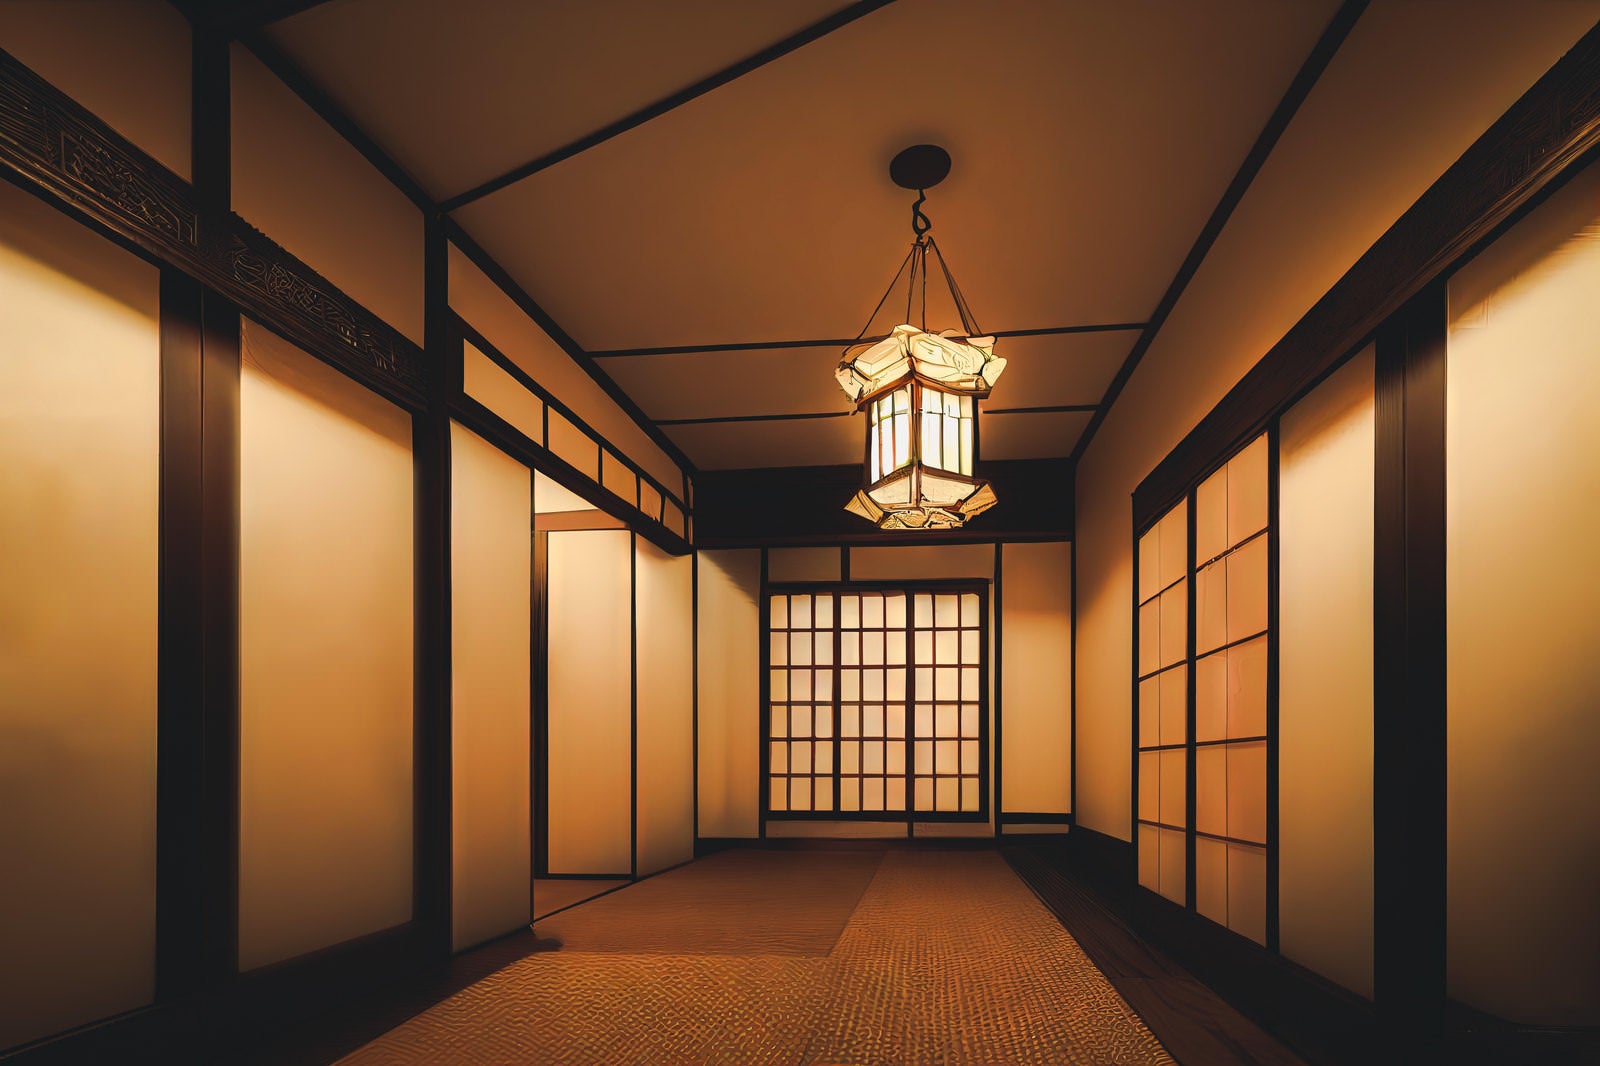 「アジアンテイストな照明と廊下」の写真